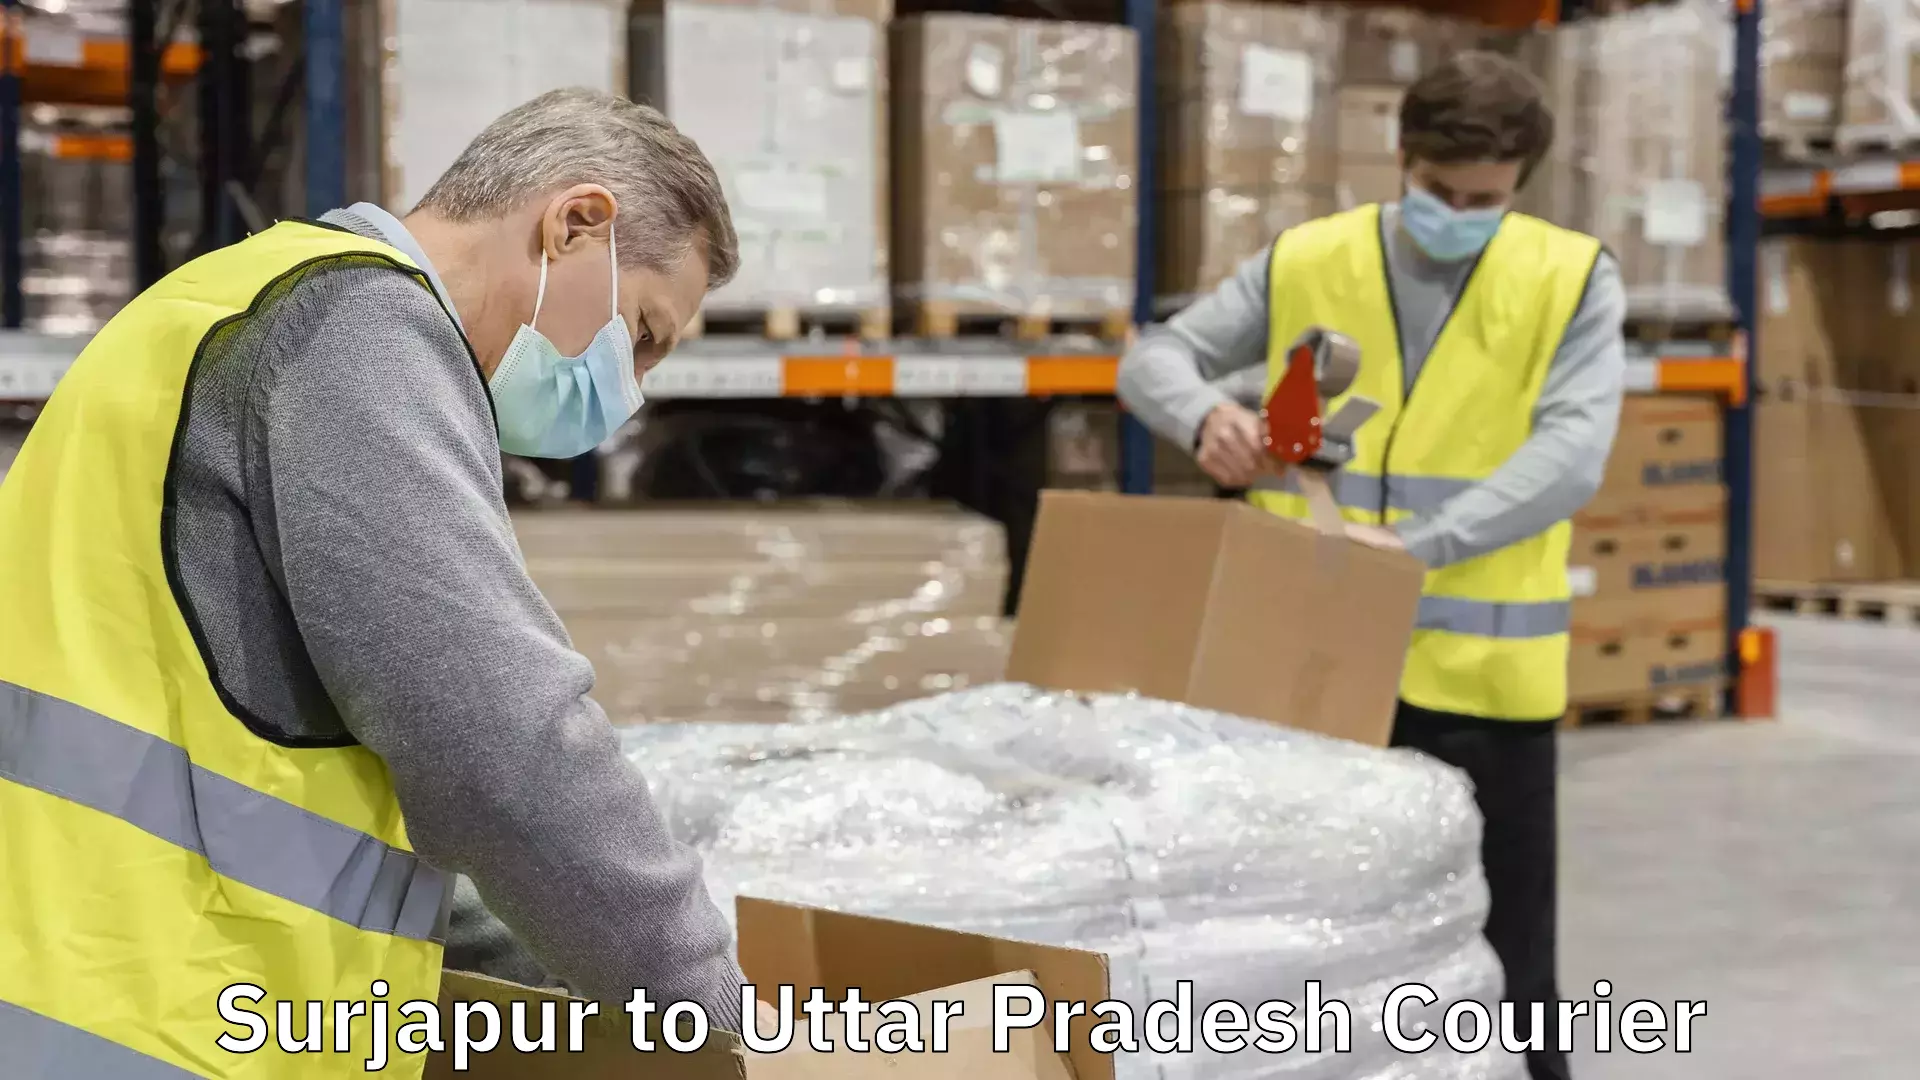 Efficient cargo services Surjapur to Uttar Pradesh